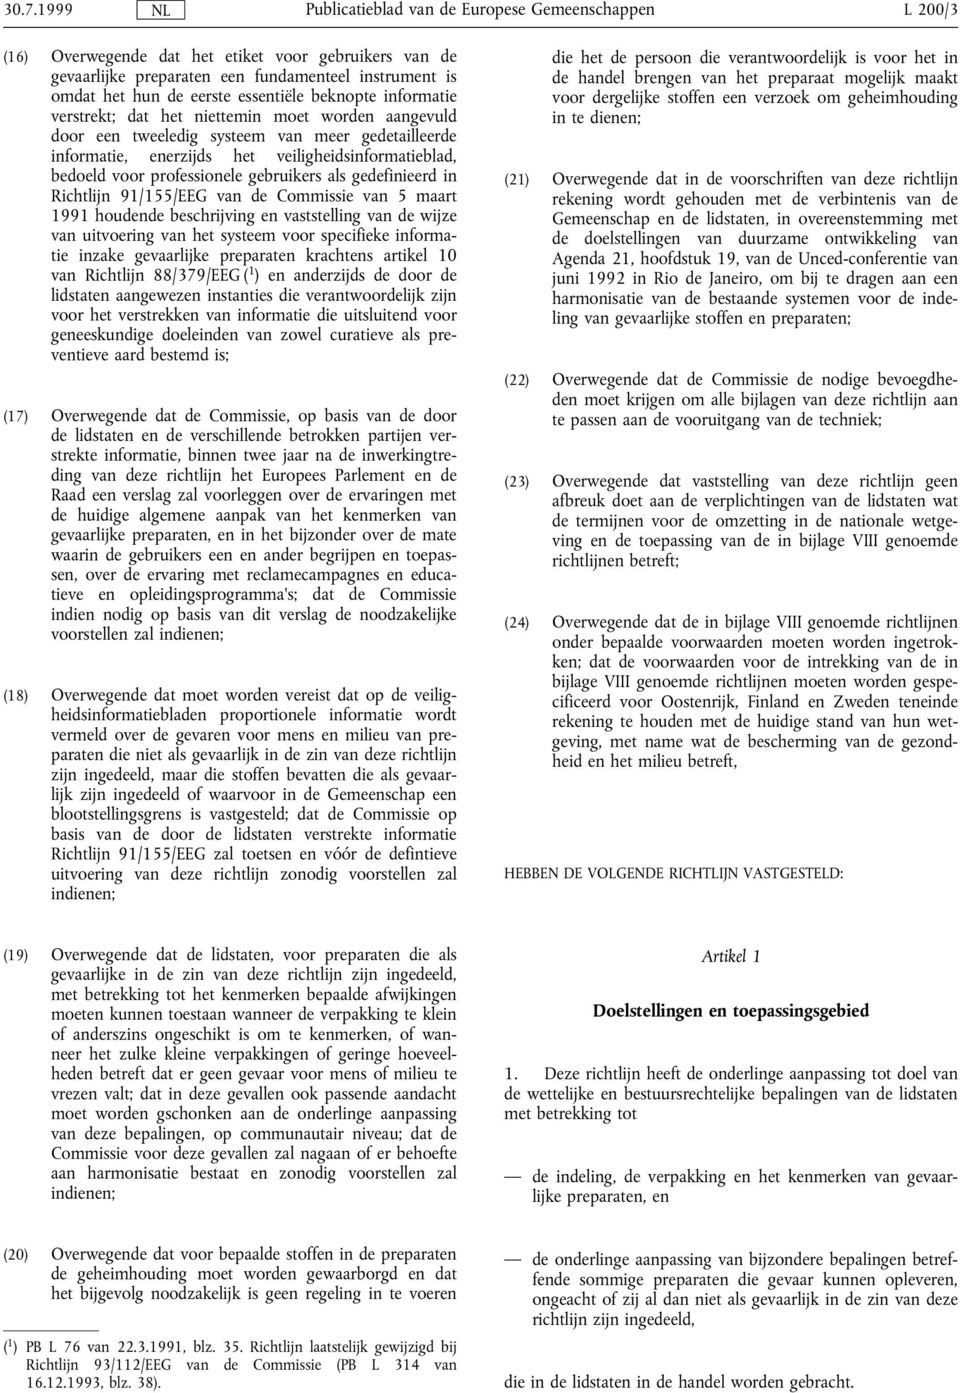 Richtlijn 91/155/EEG van de Commissie van 5 maart 1991 houdende beschrijving en vaststelling van de wijze van uitvoering van het systeem voor specifieke informatie inzake gevaarlijke preparaten